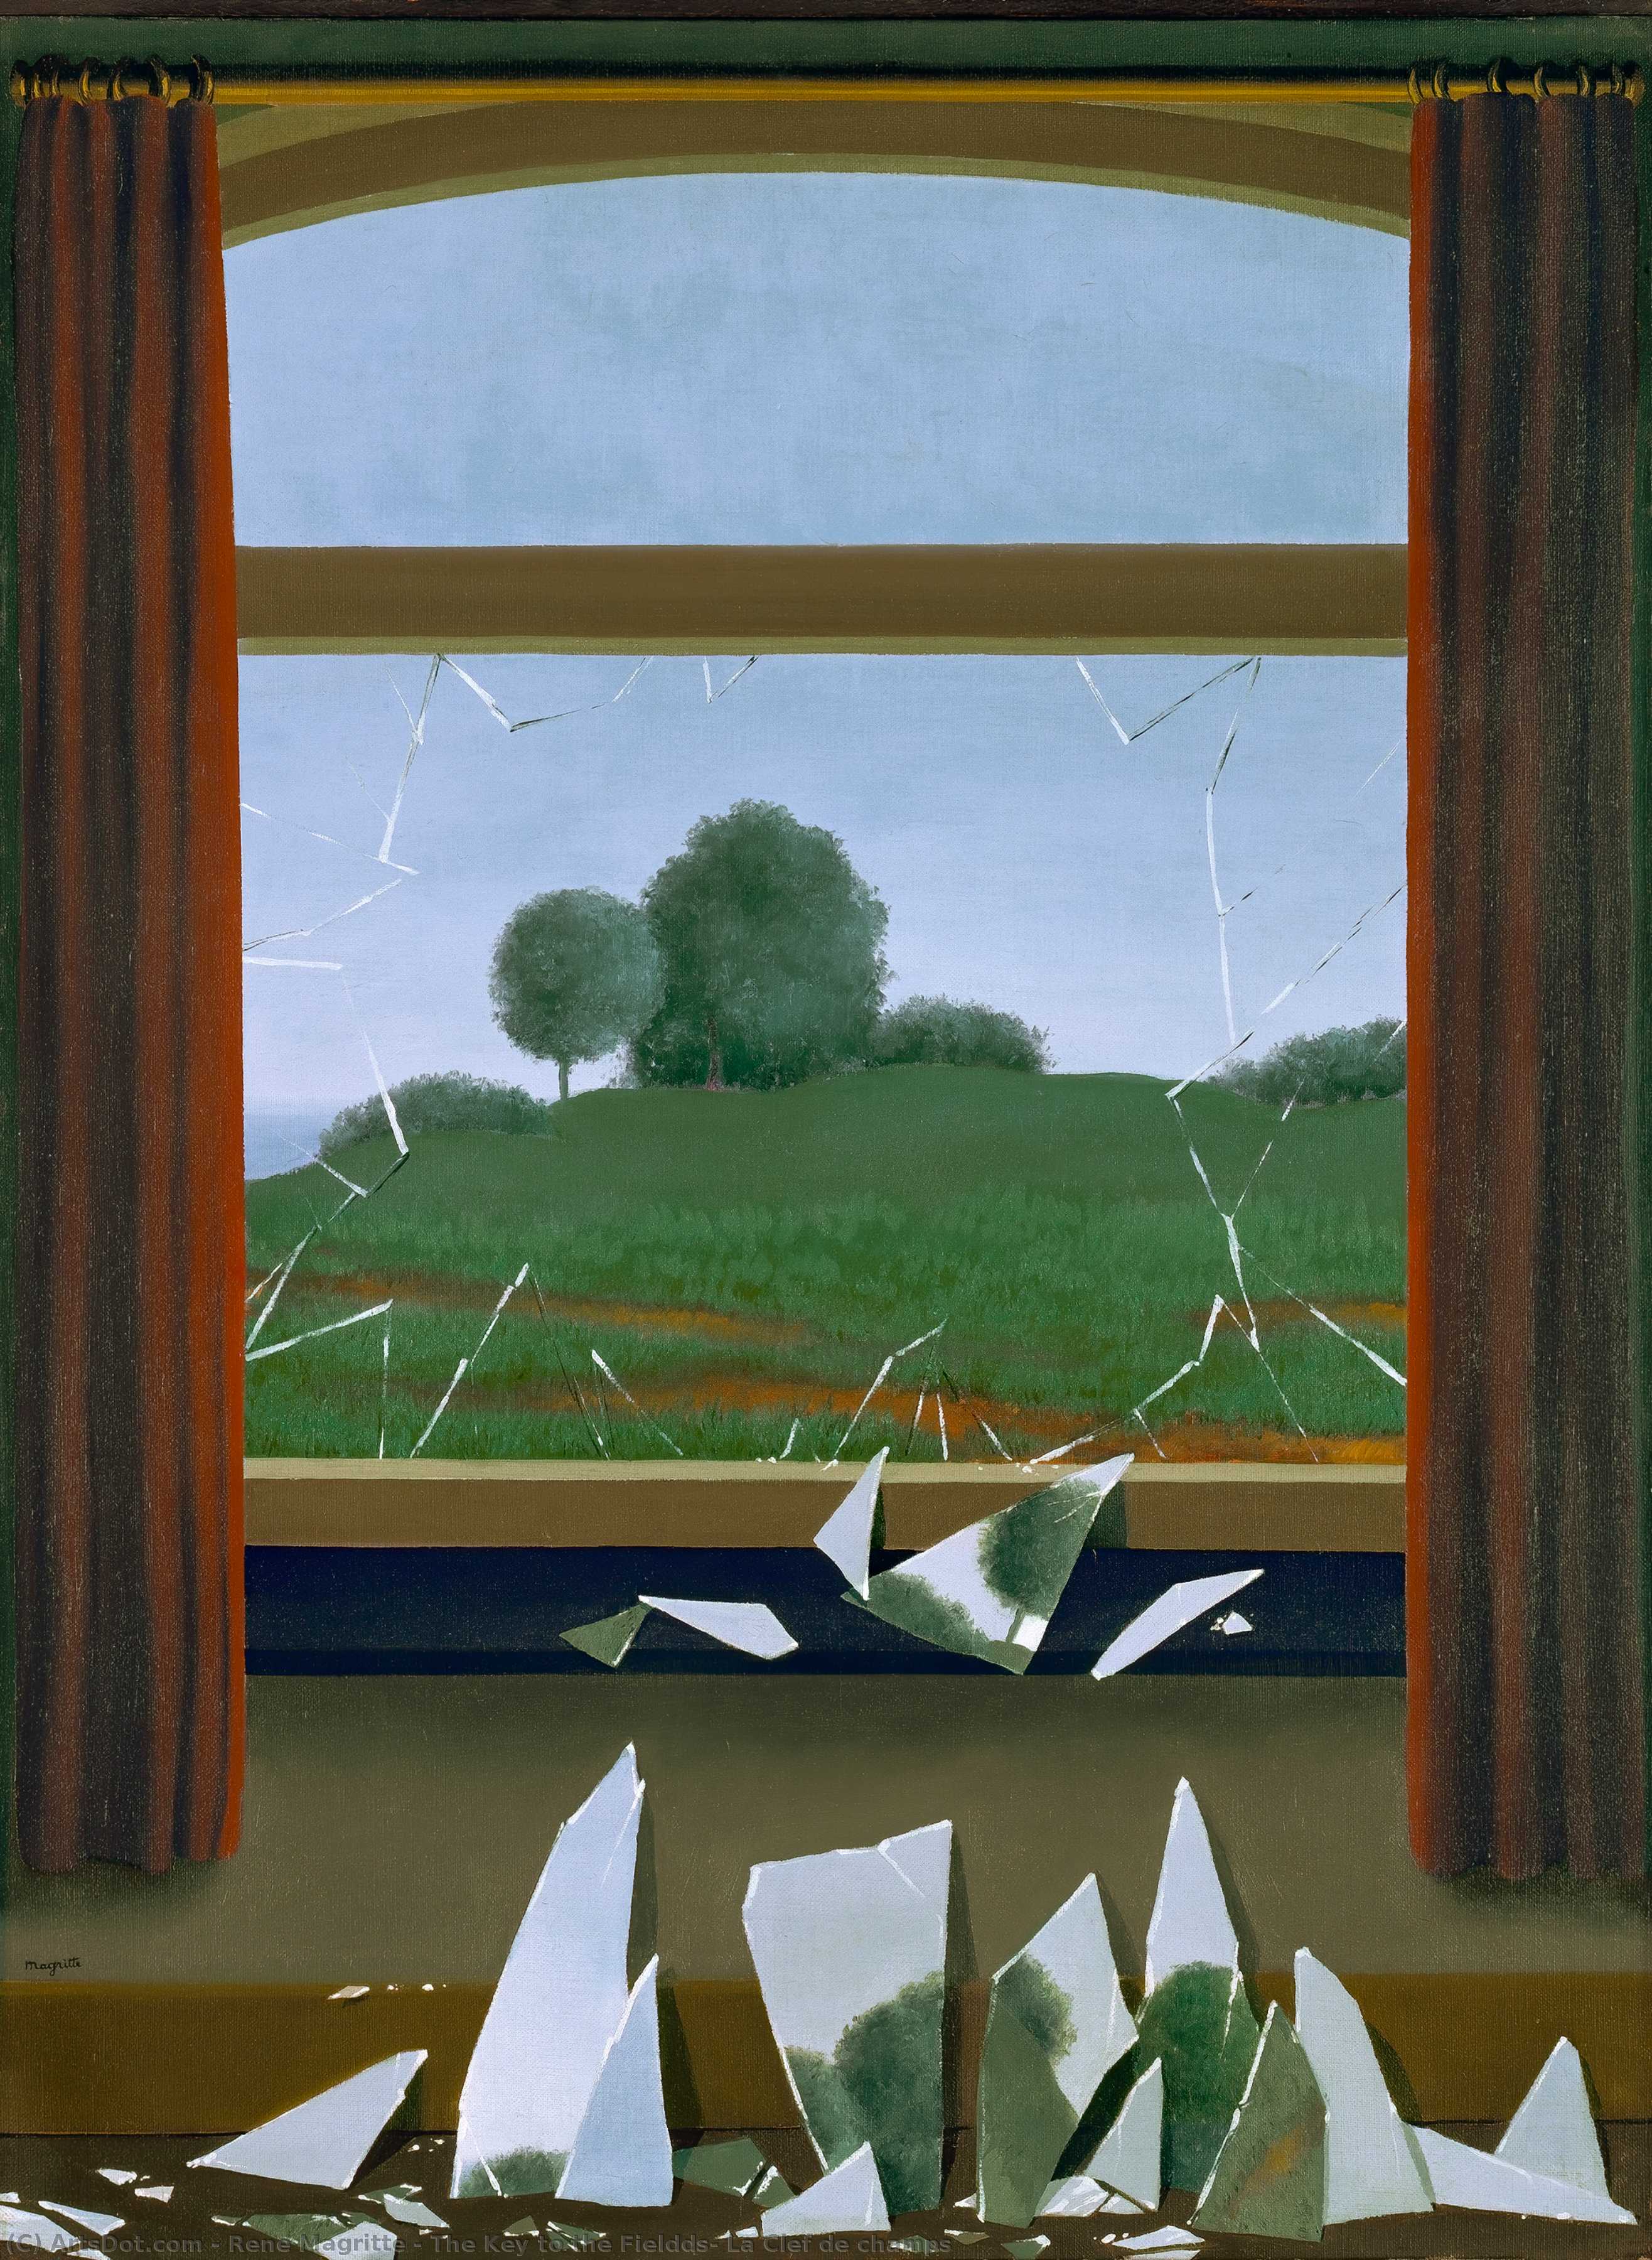 Wikioo.org - Bách khoa toàn thư về mỹ thuật - Vẽ tranh, Tác phẩm nghệ thuật Rene Magritte - The Key to the Fieldds, La Clef de champs